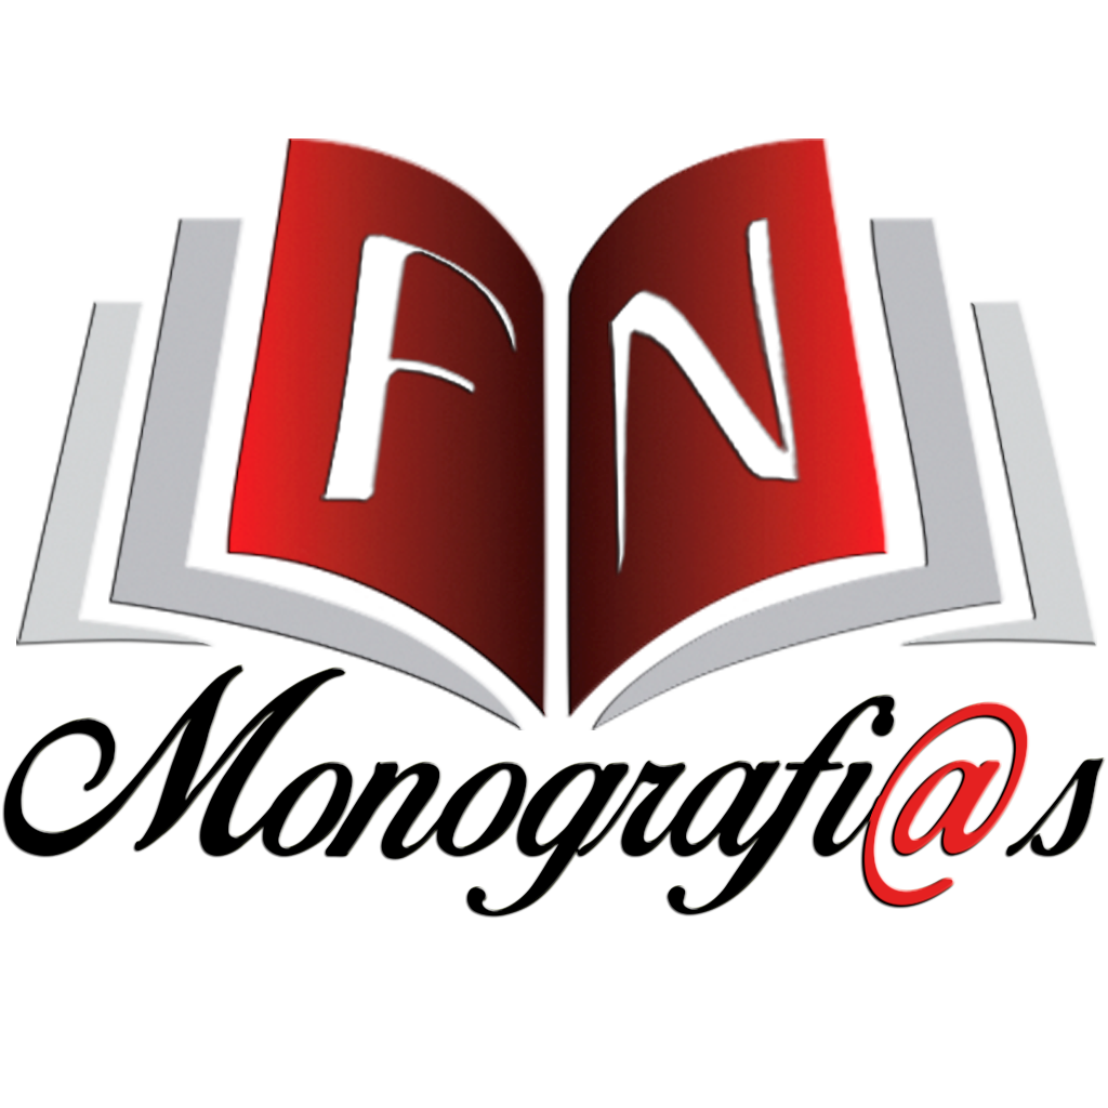 FN Monografias